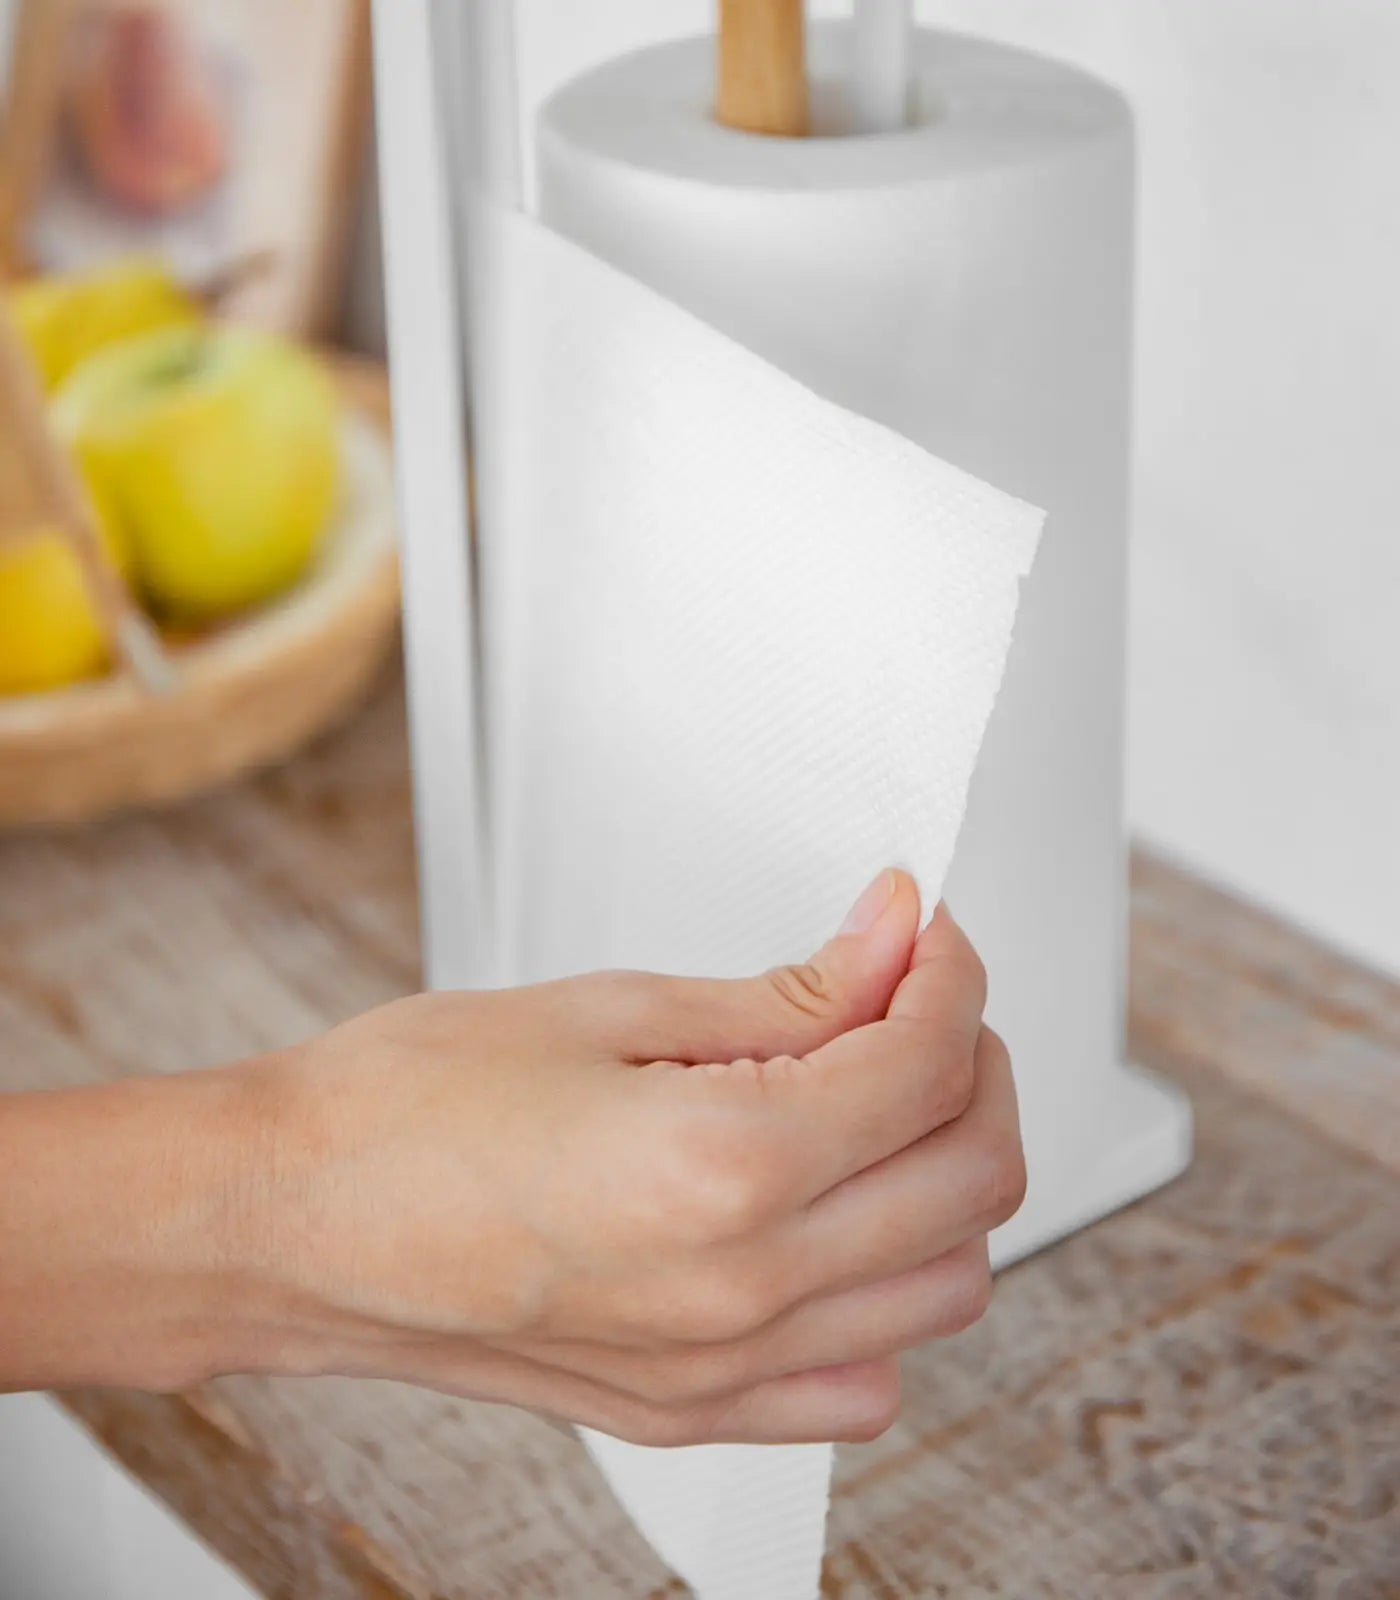 Tosca Paper Towel Holder